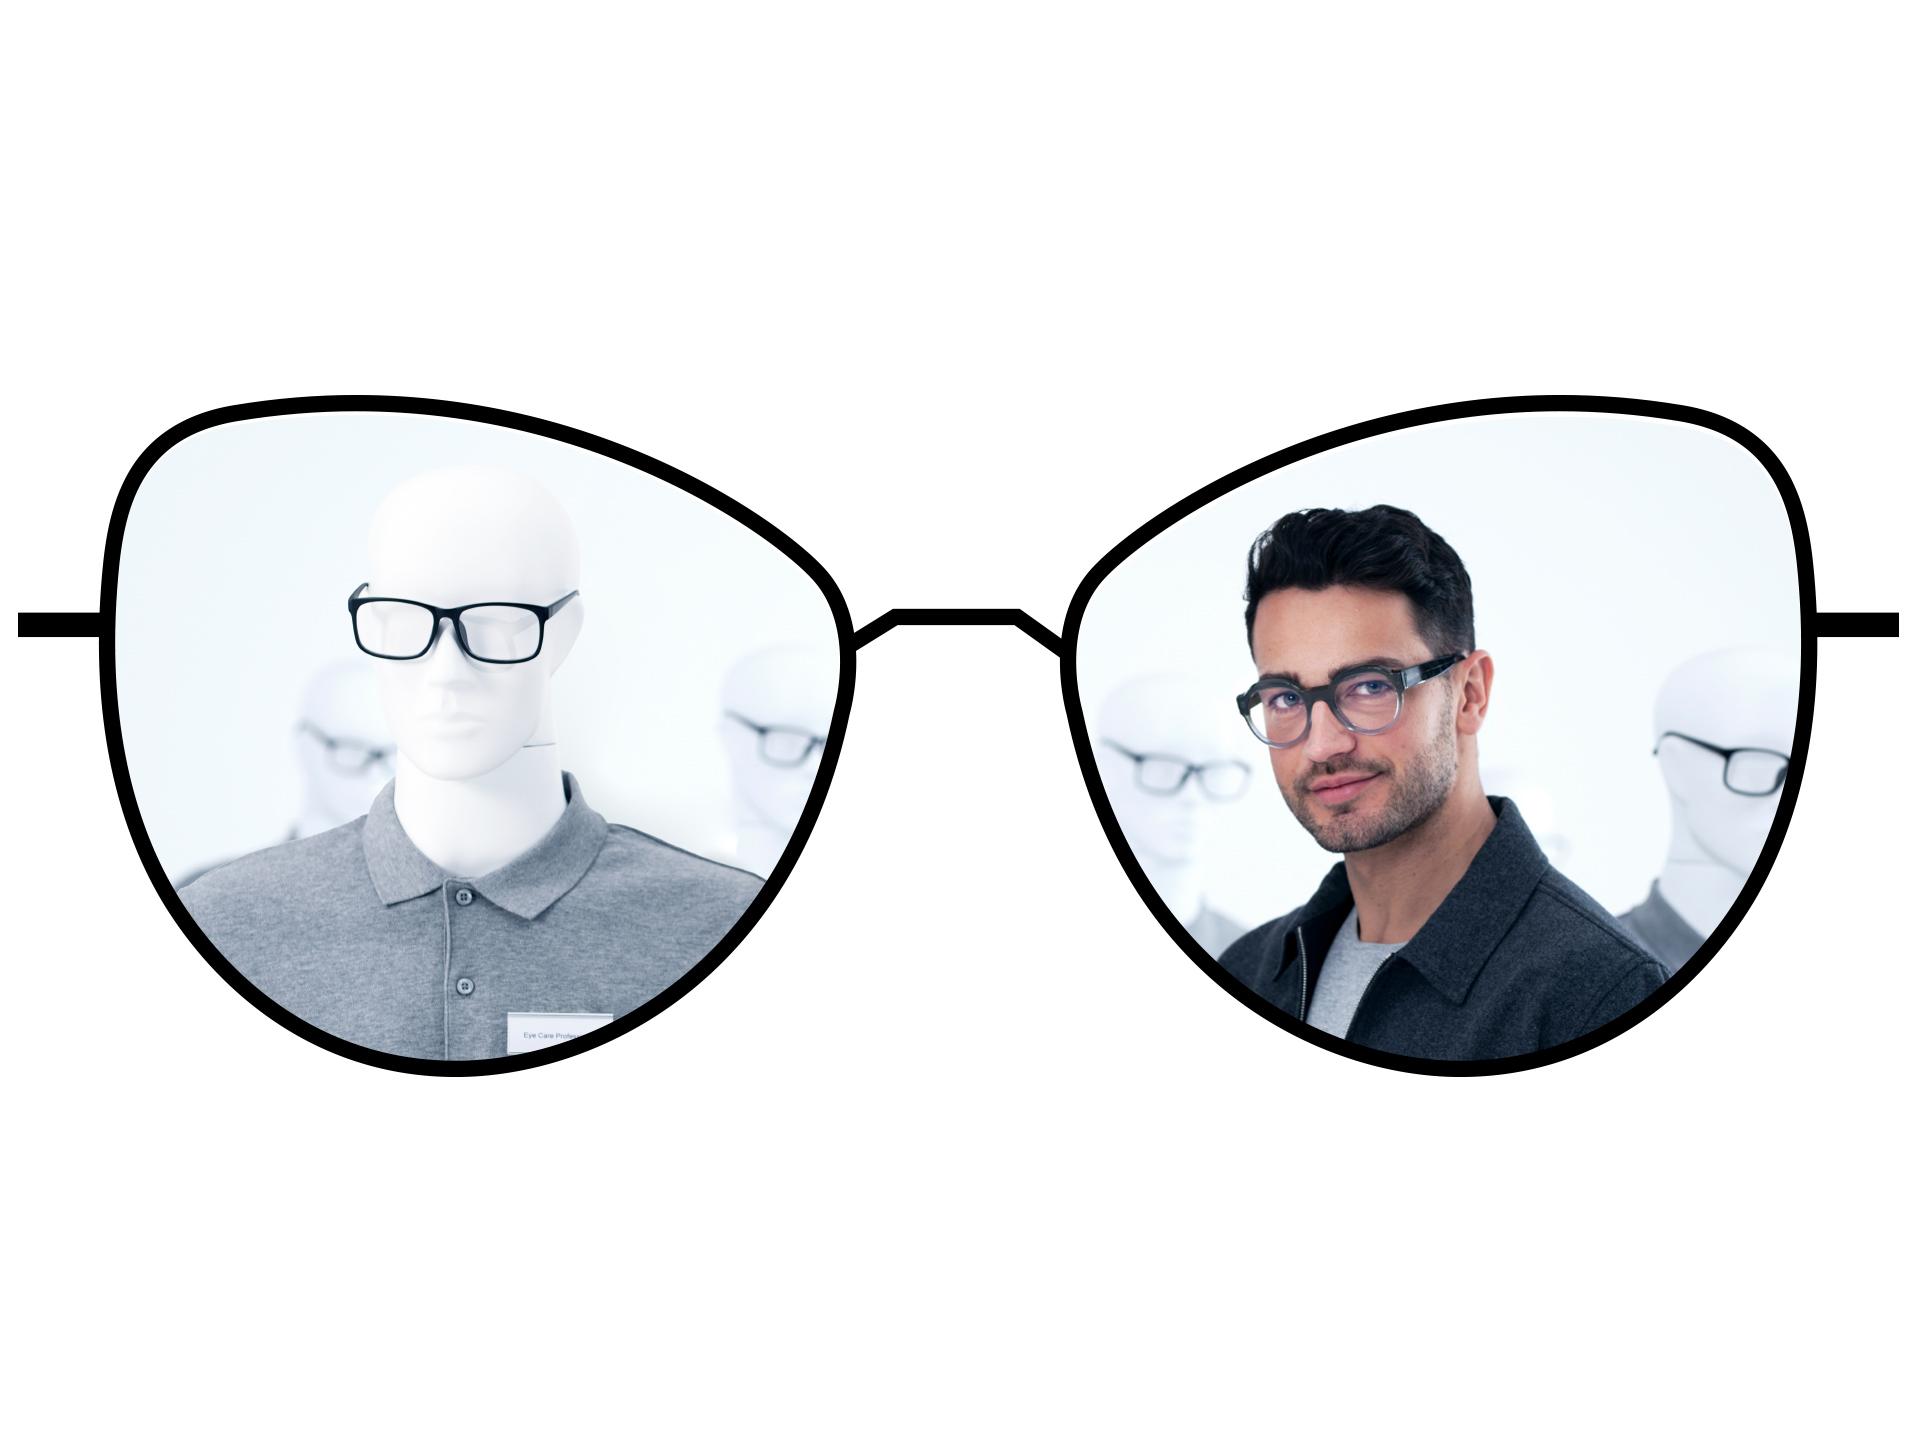 Vergleichende Darstellung von Brillen mit Standard-Einstärkengläsern und verschwommener Sicht und ZEISS ClearView Einstärkengläsern mit großen, klaren, scharfen Sichtzonen